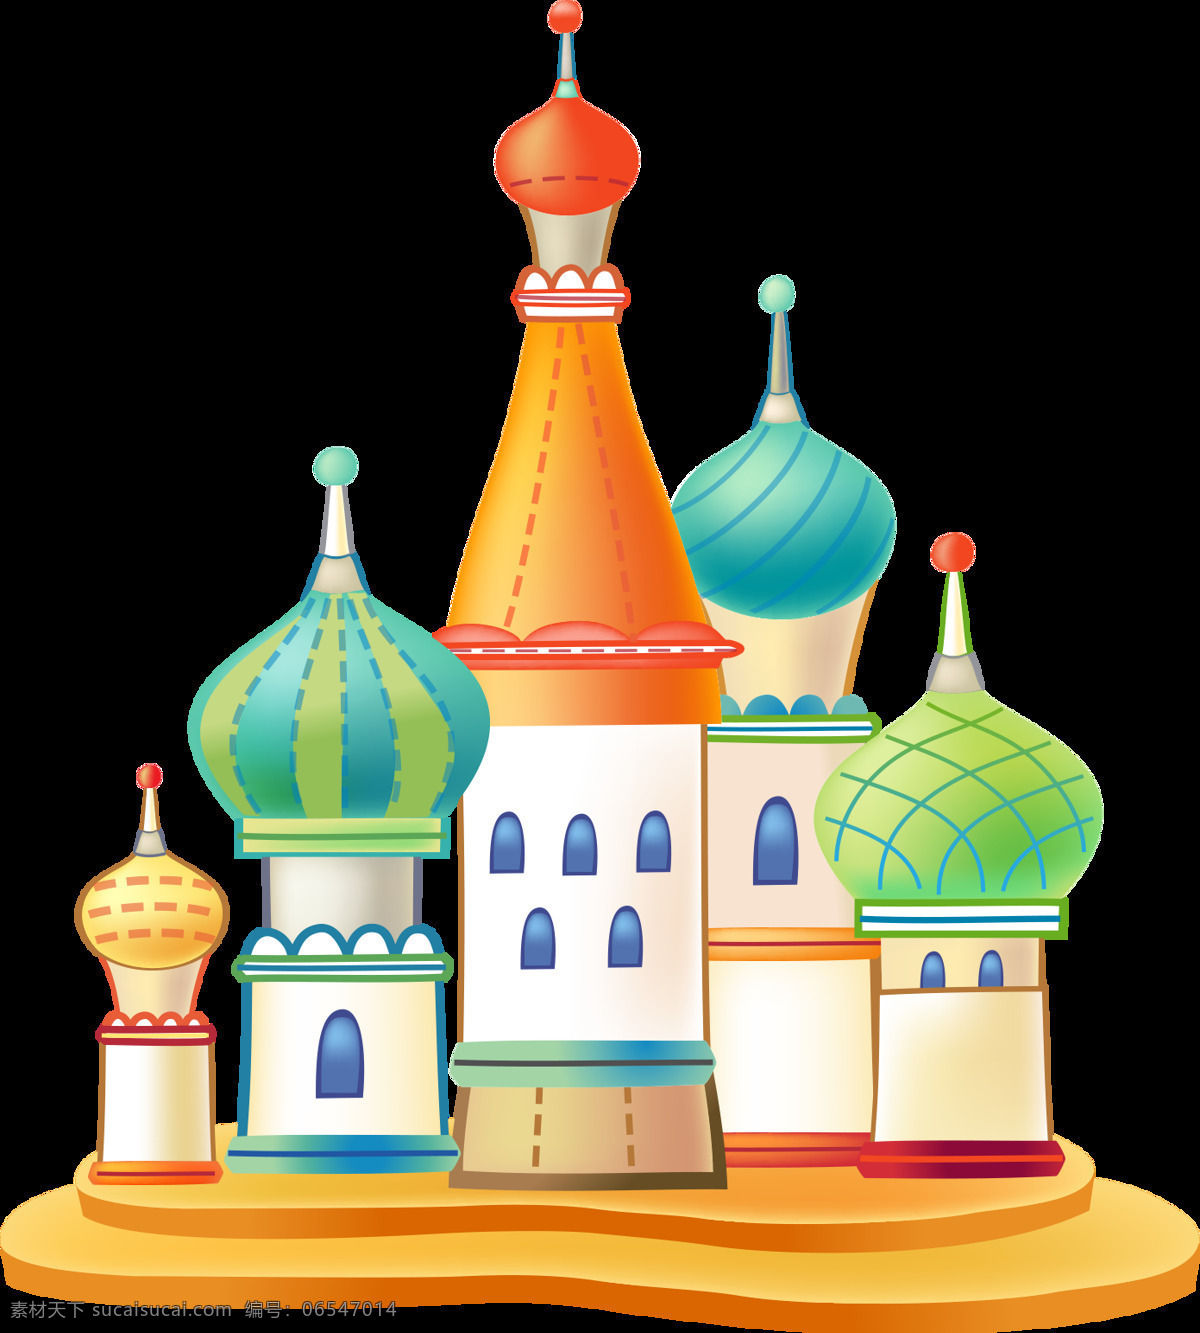 彩色 卡通 城堡 图案 元素 建筑素材 卡通房子 卡通建筑 童话城堡 建筑图案 唯美建筑 欧式房屋 设计元素 装饰图案 城堡png